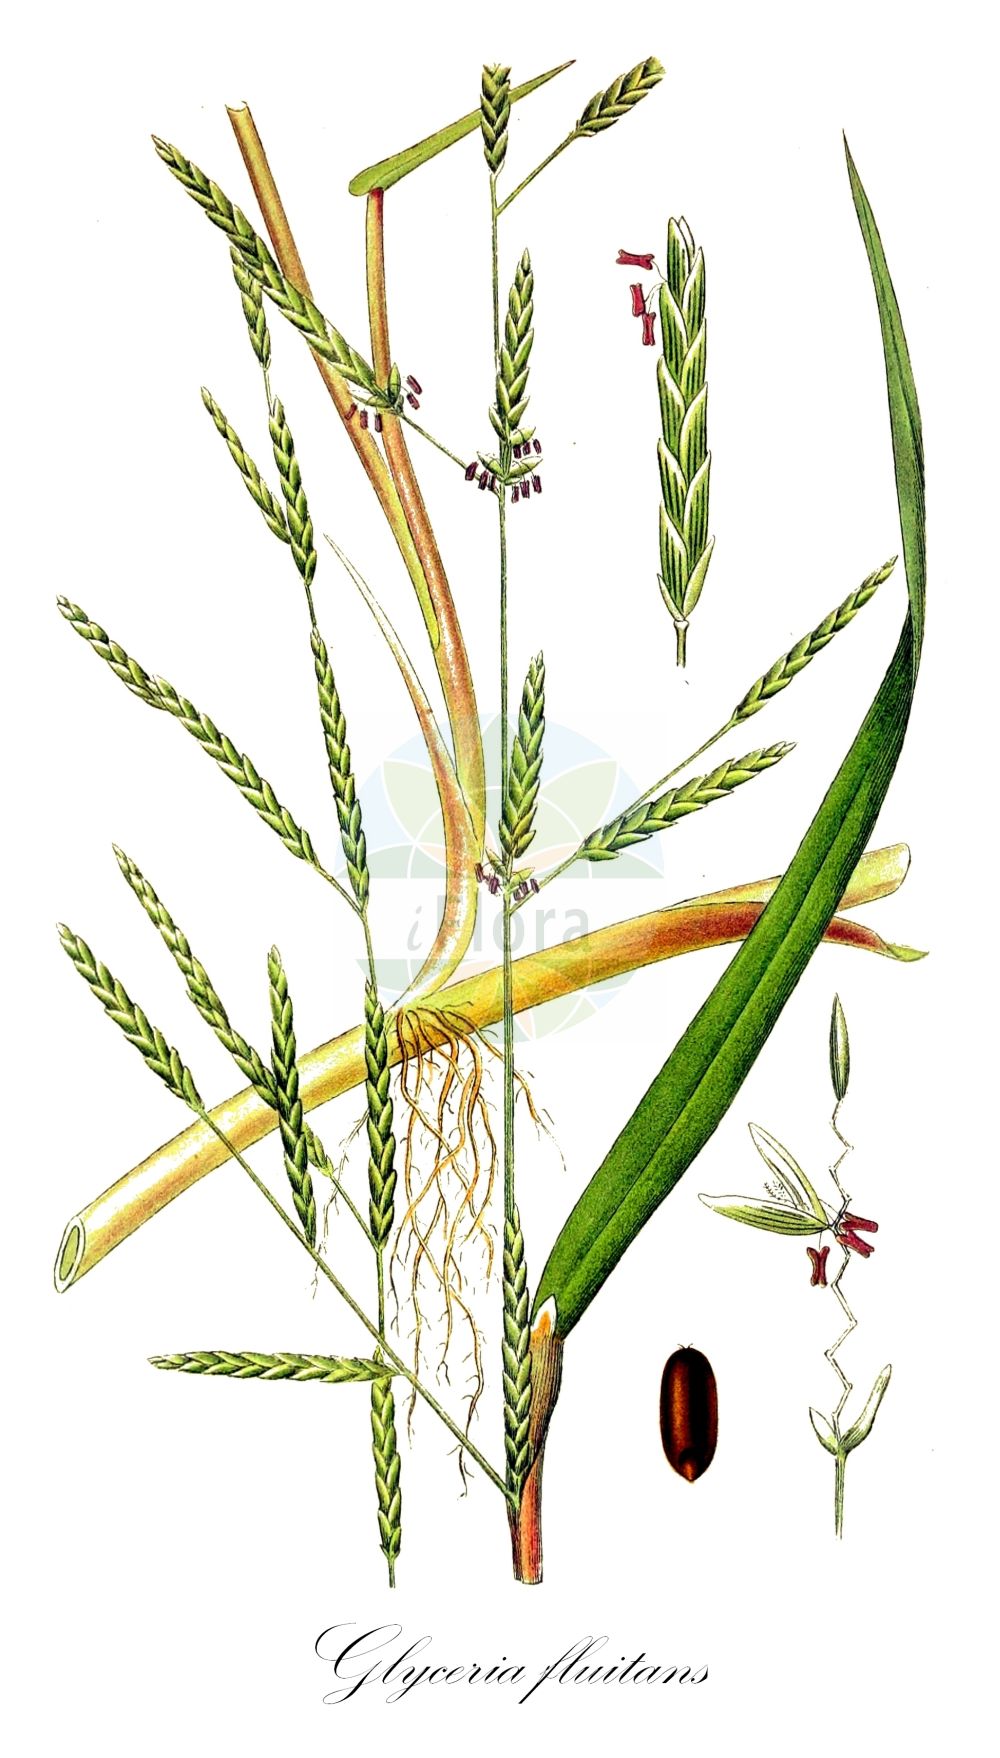 Historische Abbildung von Glyceria fluitans (Flutender Schwaden - Floating Sweet-grass). ---- Historical Drawing of Glyceria fluitans (Flutender Schwaden - Floating Sweet-grass).(Glyceria fluitans,Flutender Schwaden,Floating Sweet-grass,Festuca fluitans,Glyceria fluitans,Flutender Schwaden,Flutender Schwaden,Mannagras,Floating Sweet-grass,Common Flotegrass,Flotegrass,Water Mannagrass,Glyceria,Schwaden,Mannagrass,Poaceae,Süßgräser,Grass family,Lindman (1901-1905))